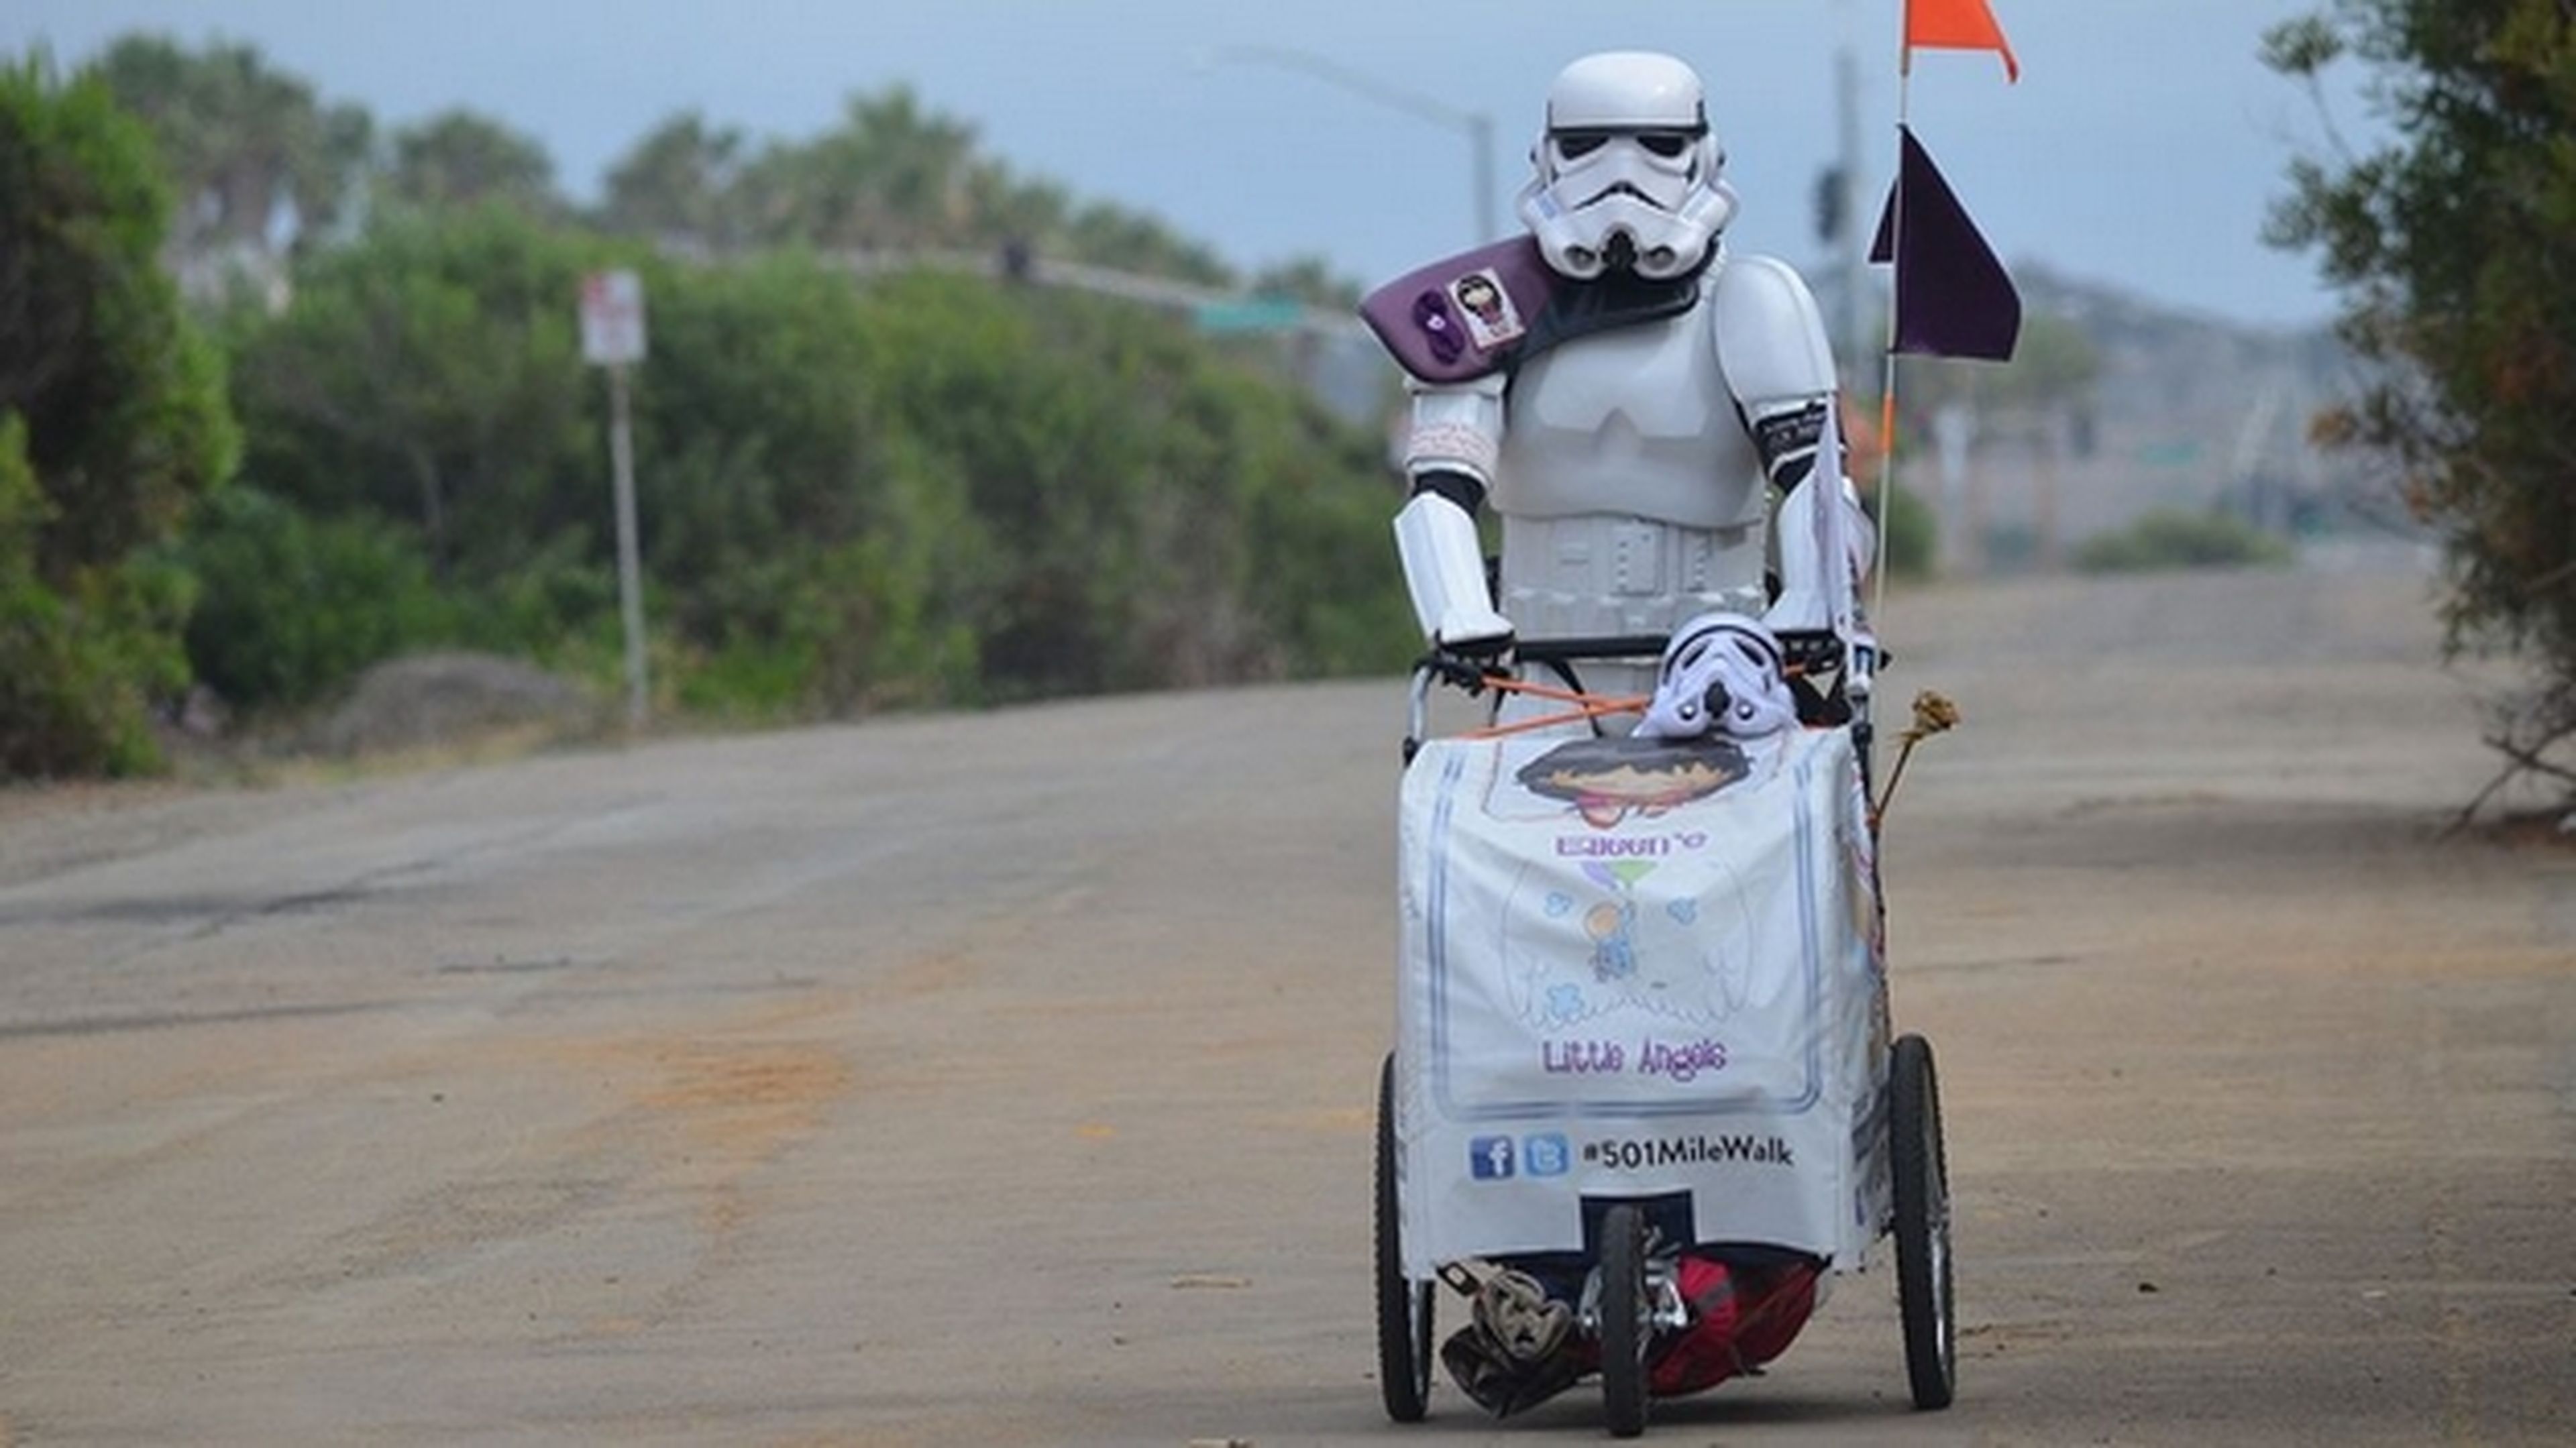 La fiebre por Star Wars llega a la Comic-Con 2015. Los stormtroopers, los protagonistas.